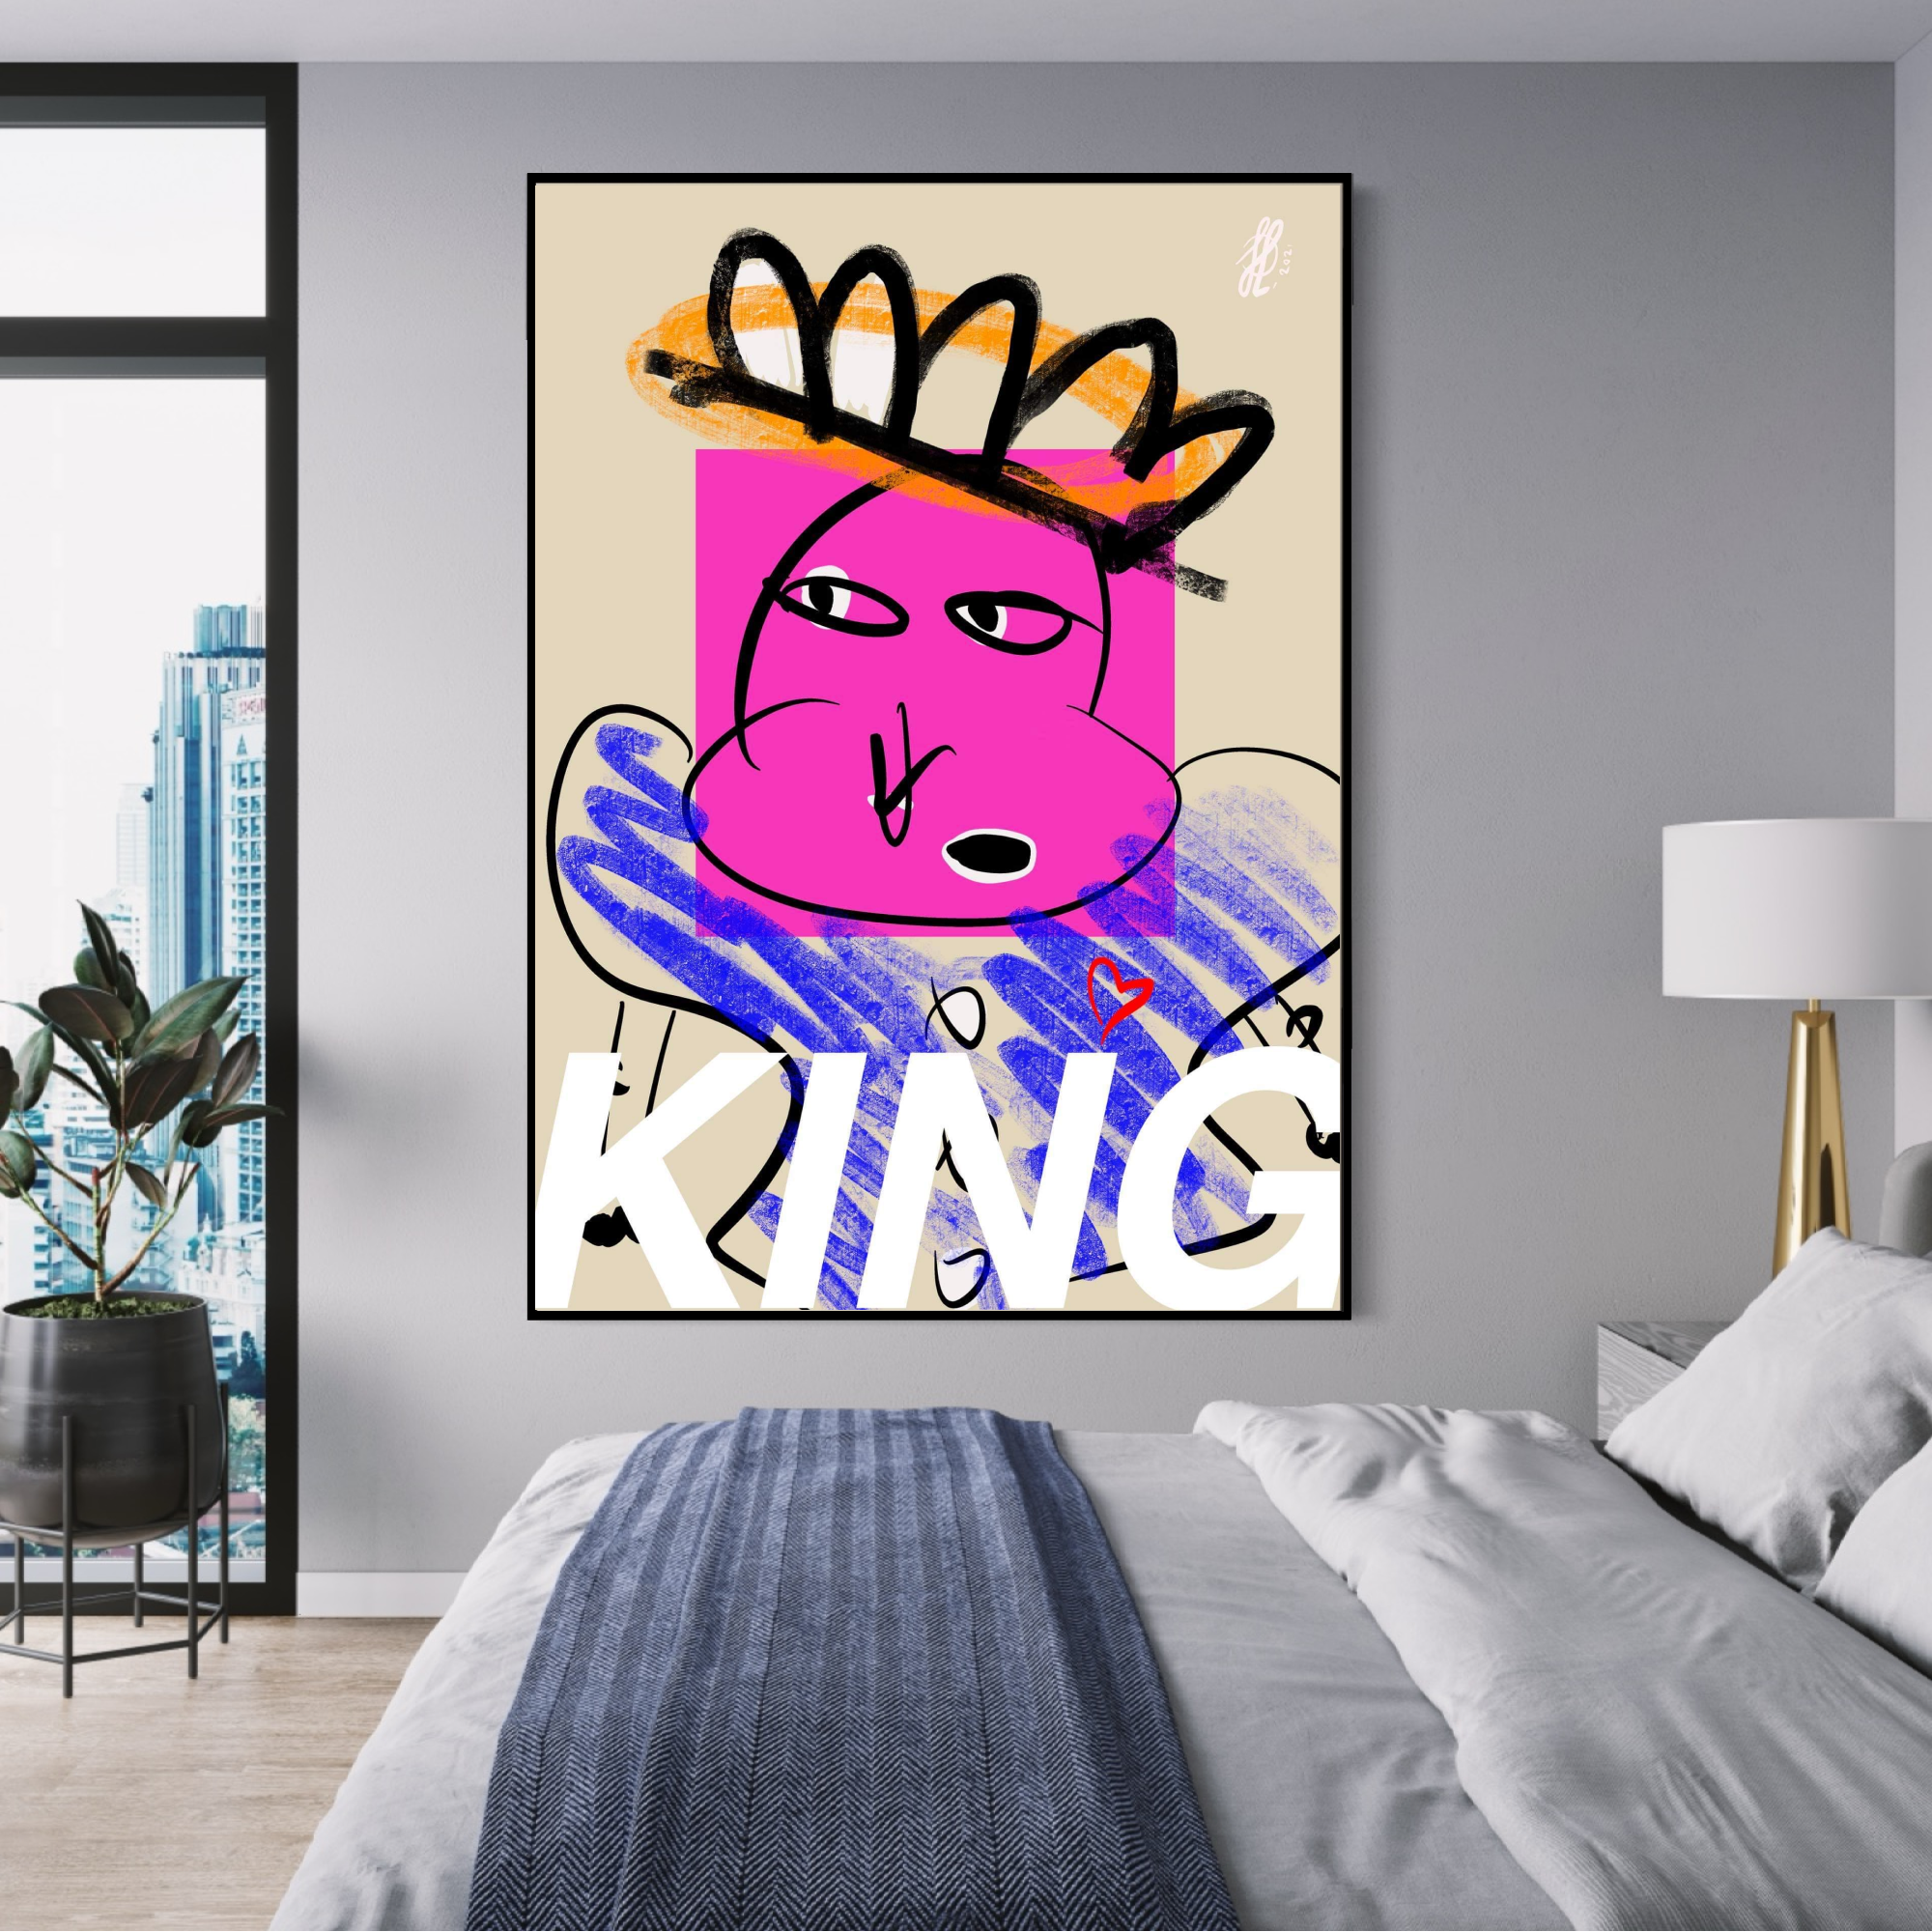 Poster: "King"